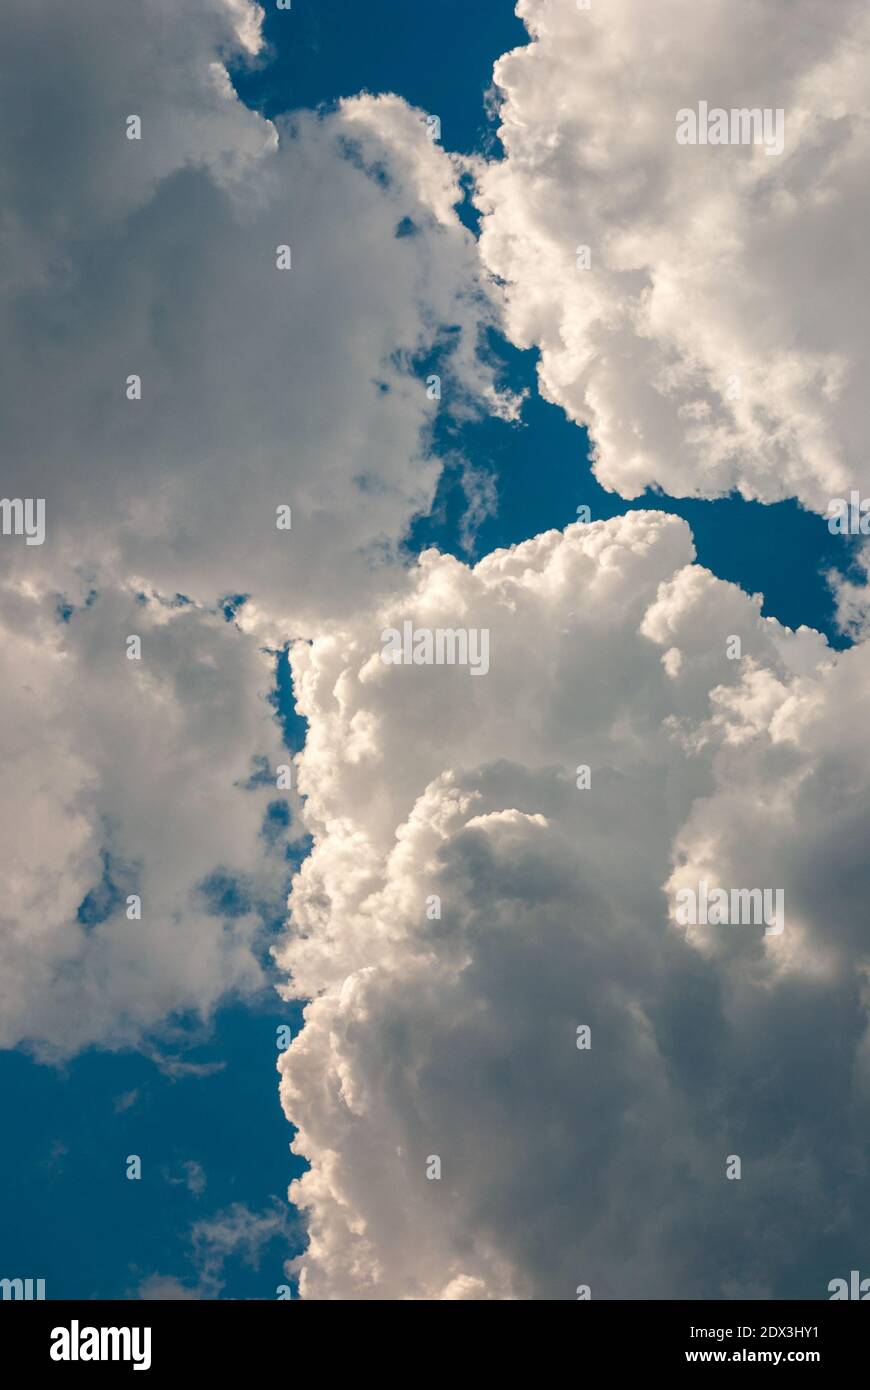 belle nuvole tuose in cielo blu prima del temporale, immagine verticale Foto Stock